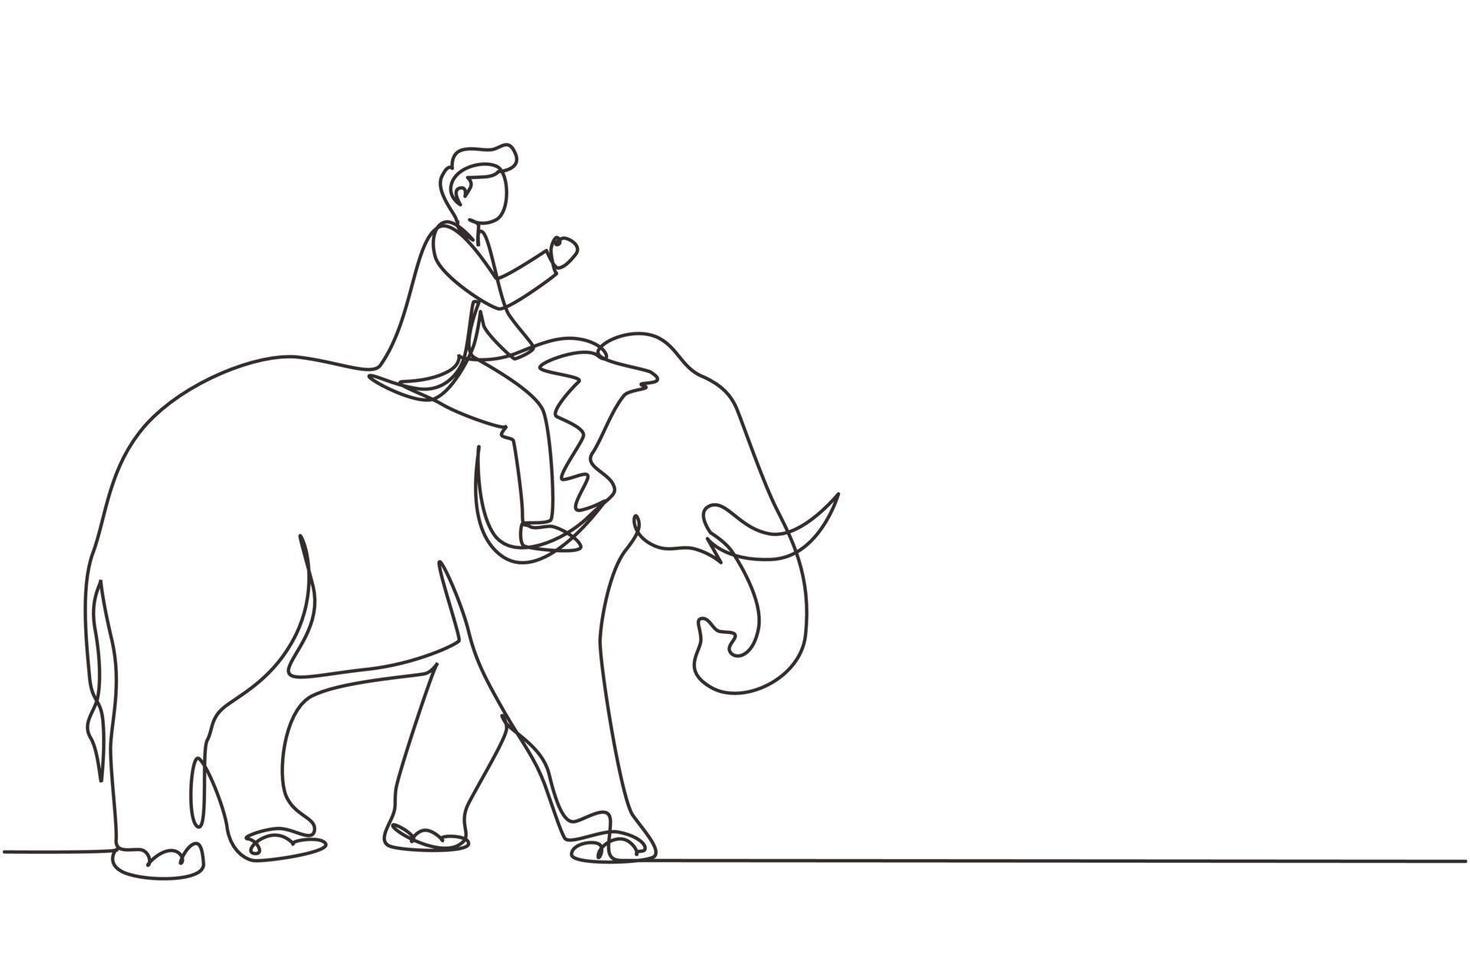 hombre de negocios de dibujo de una sola línea montando elefante símbolo de éxito. concepto de metáfora empresarial, mirando el objetivo, el logro, el liderazgo. ilustración de vector gráfico de diseño de dibujo de línea continua